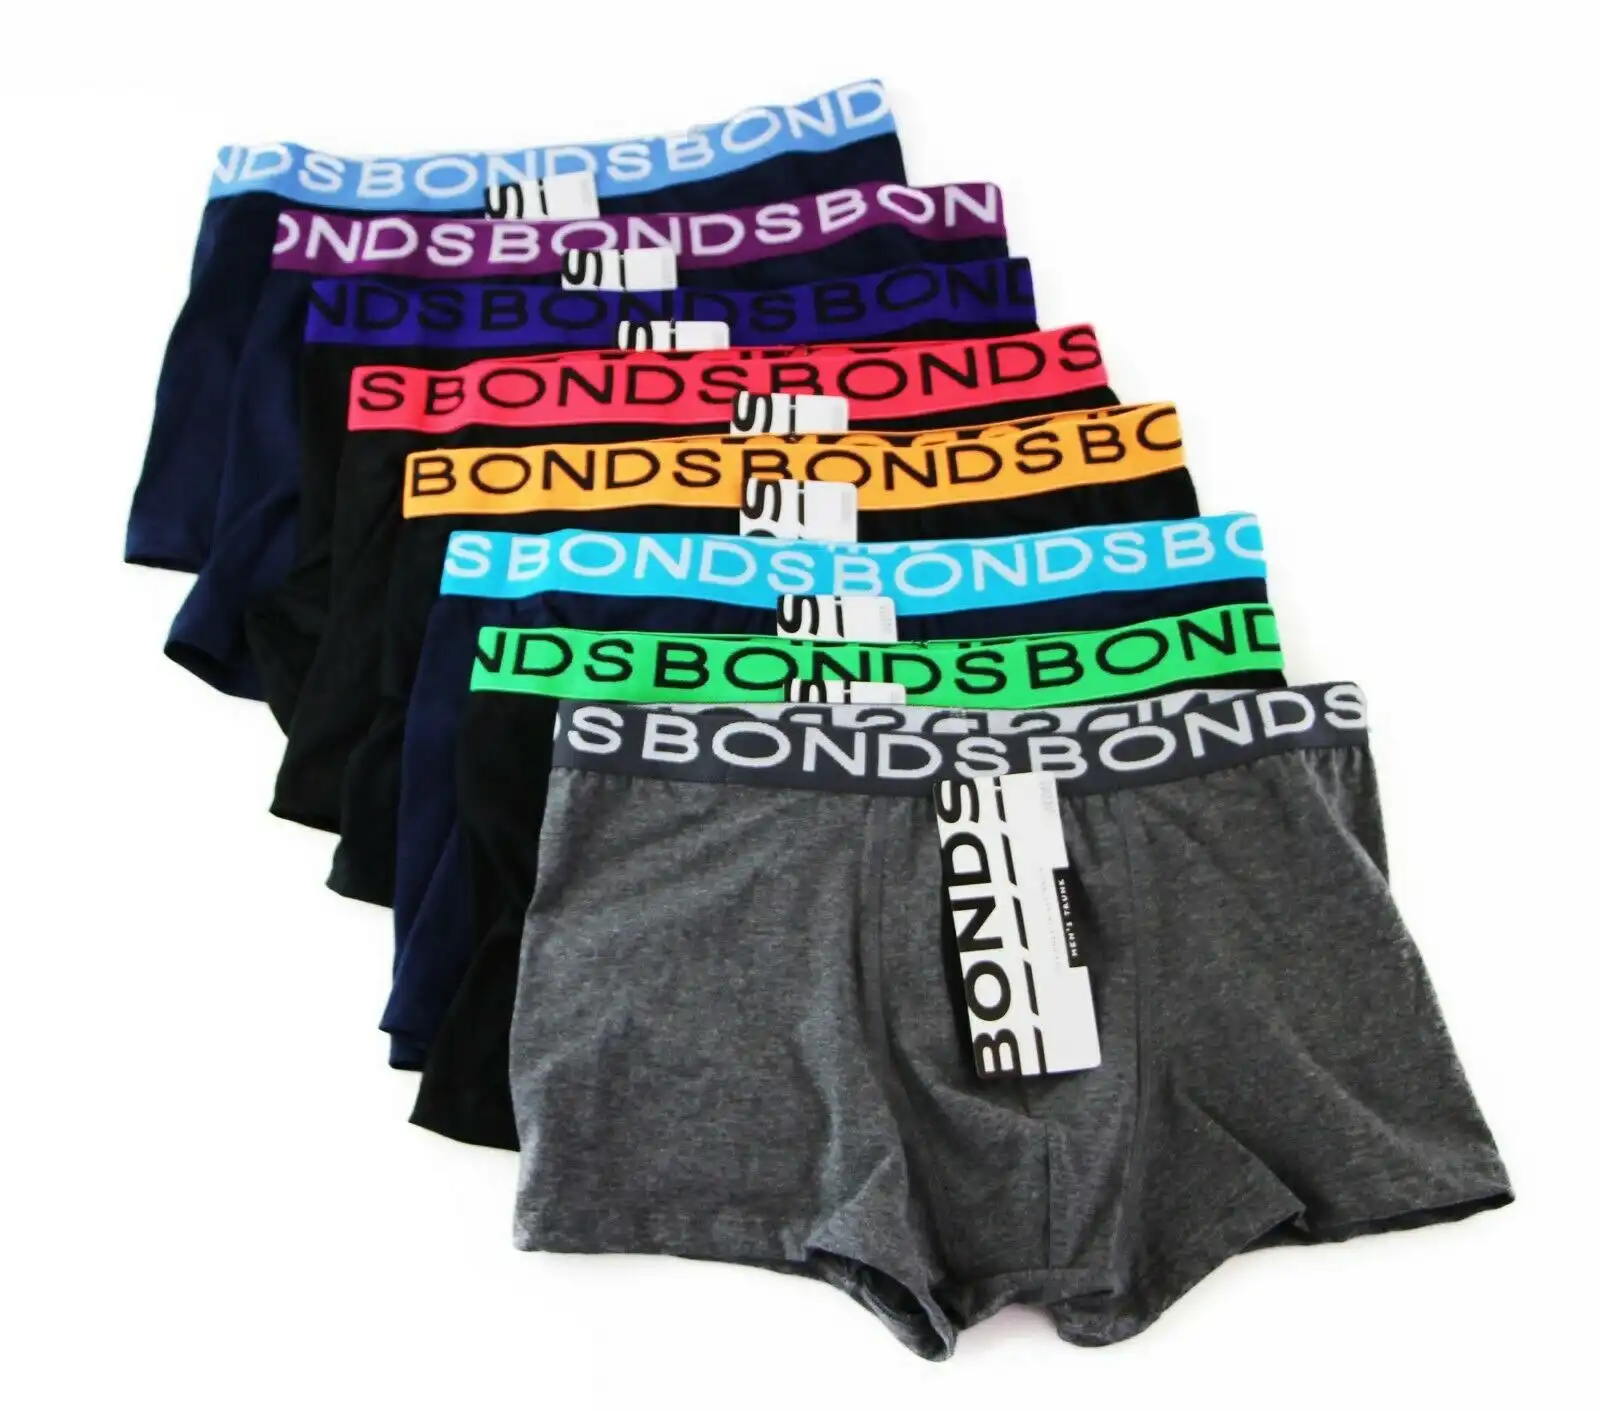 3 / 4 / 6 / 10 Pairs Mens Bonds Underwear Assorted Trunks Underwear Briefs Boxer Shorts